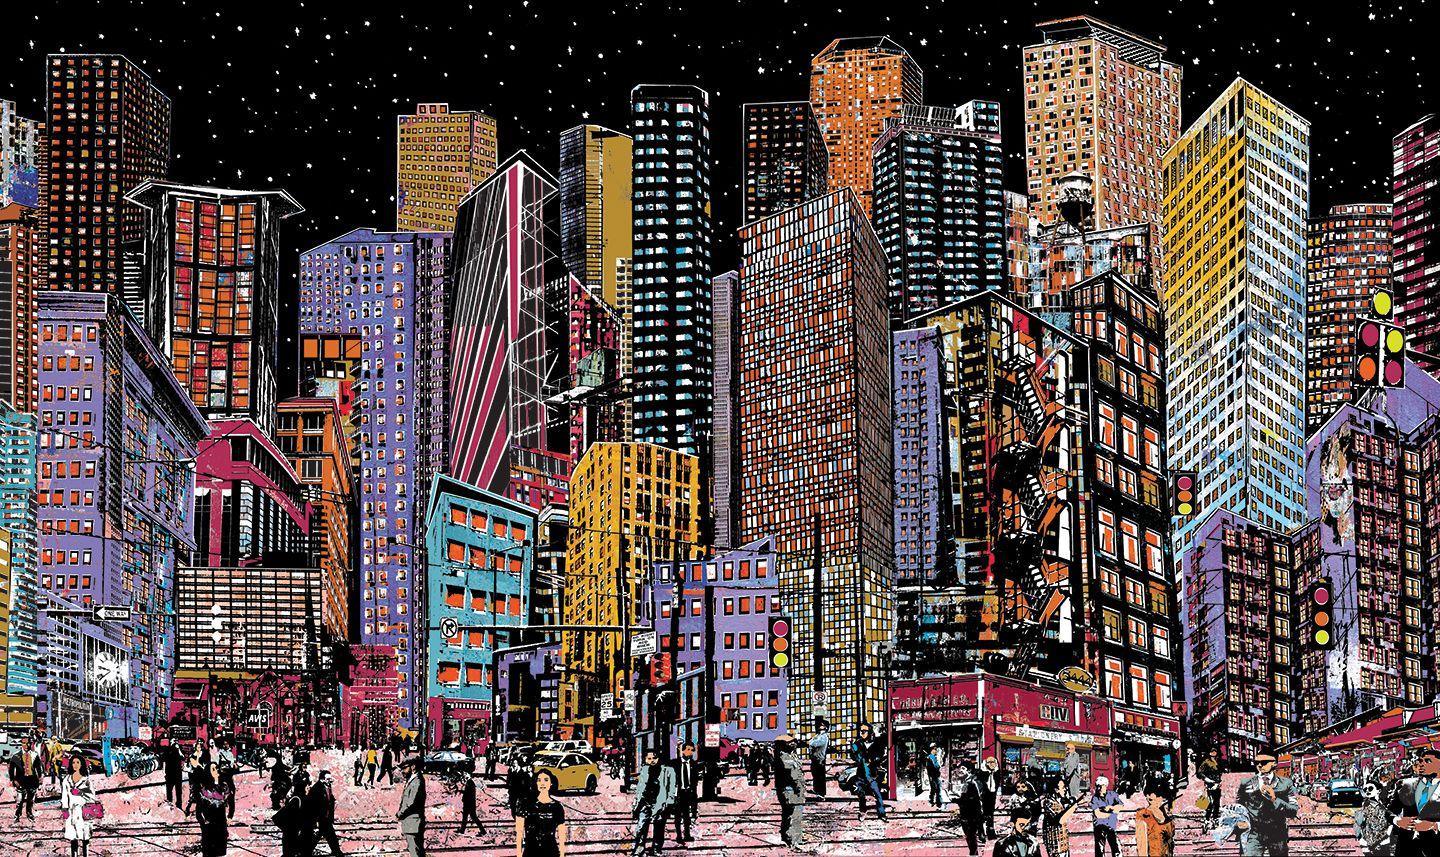 New City 2 - Mixed Media Art by Daryl Thetford 